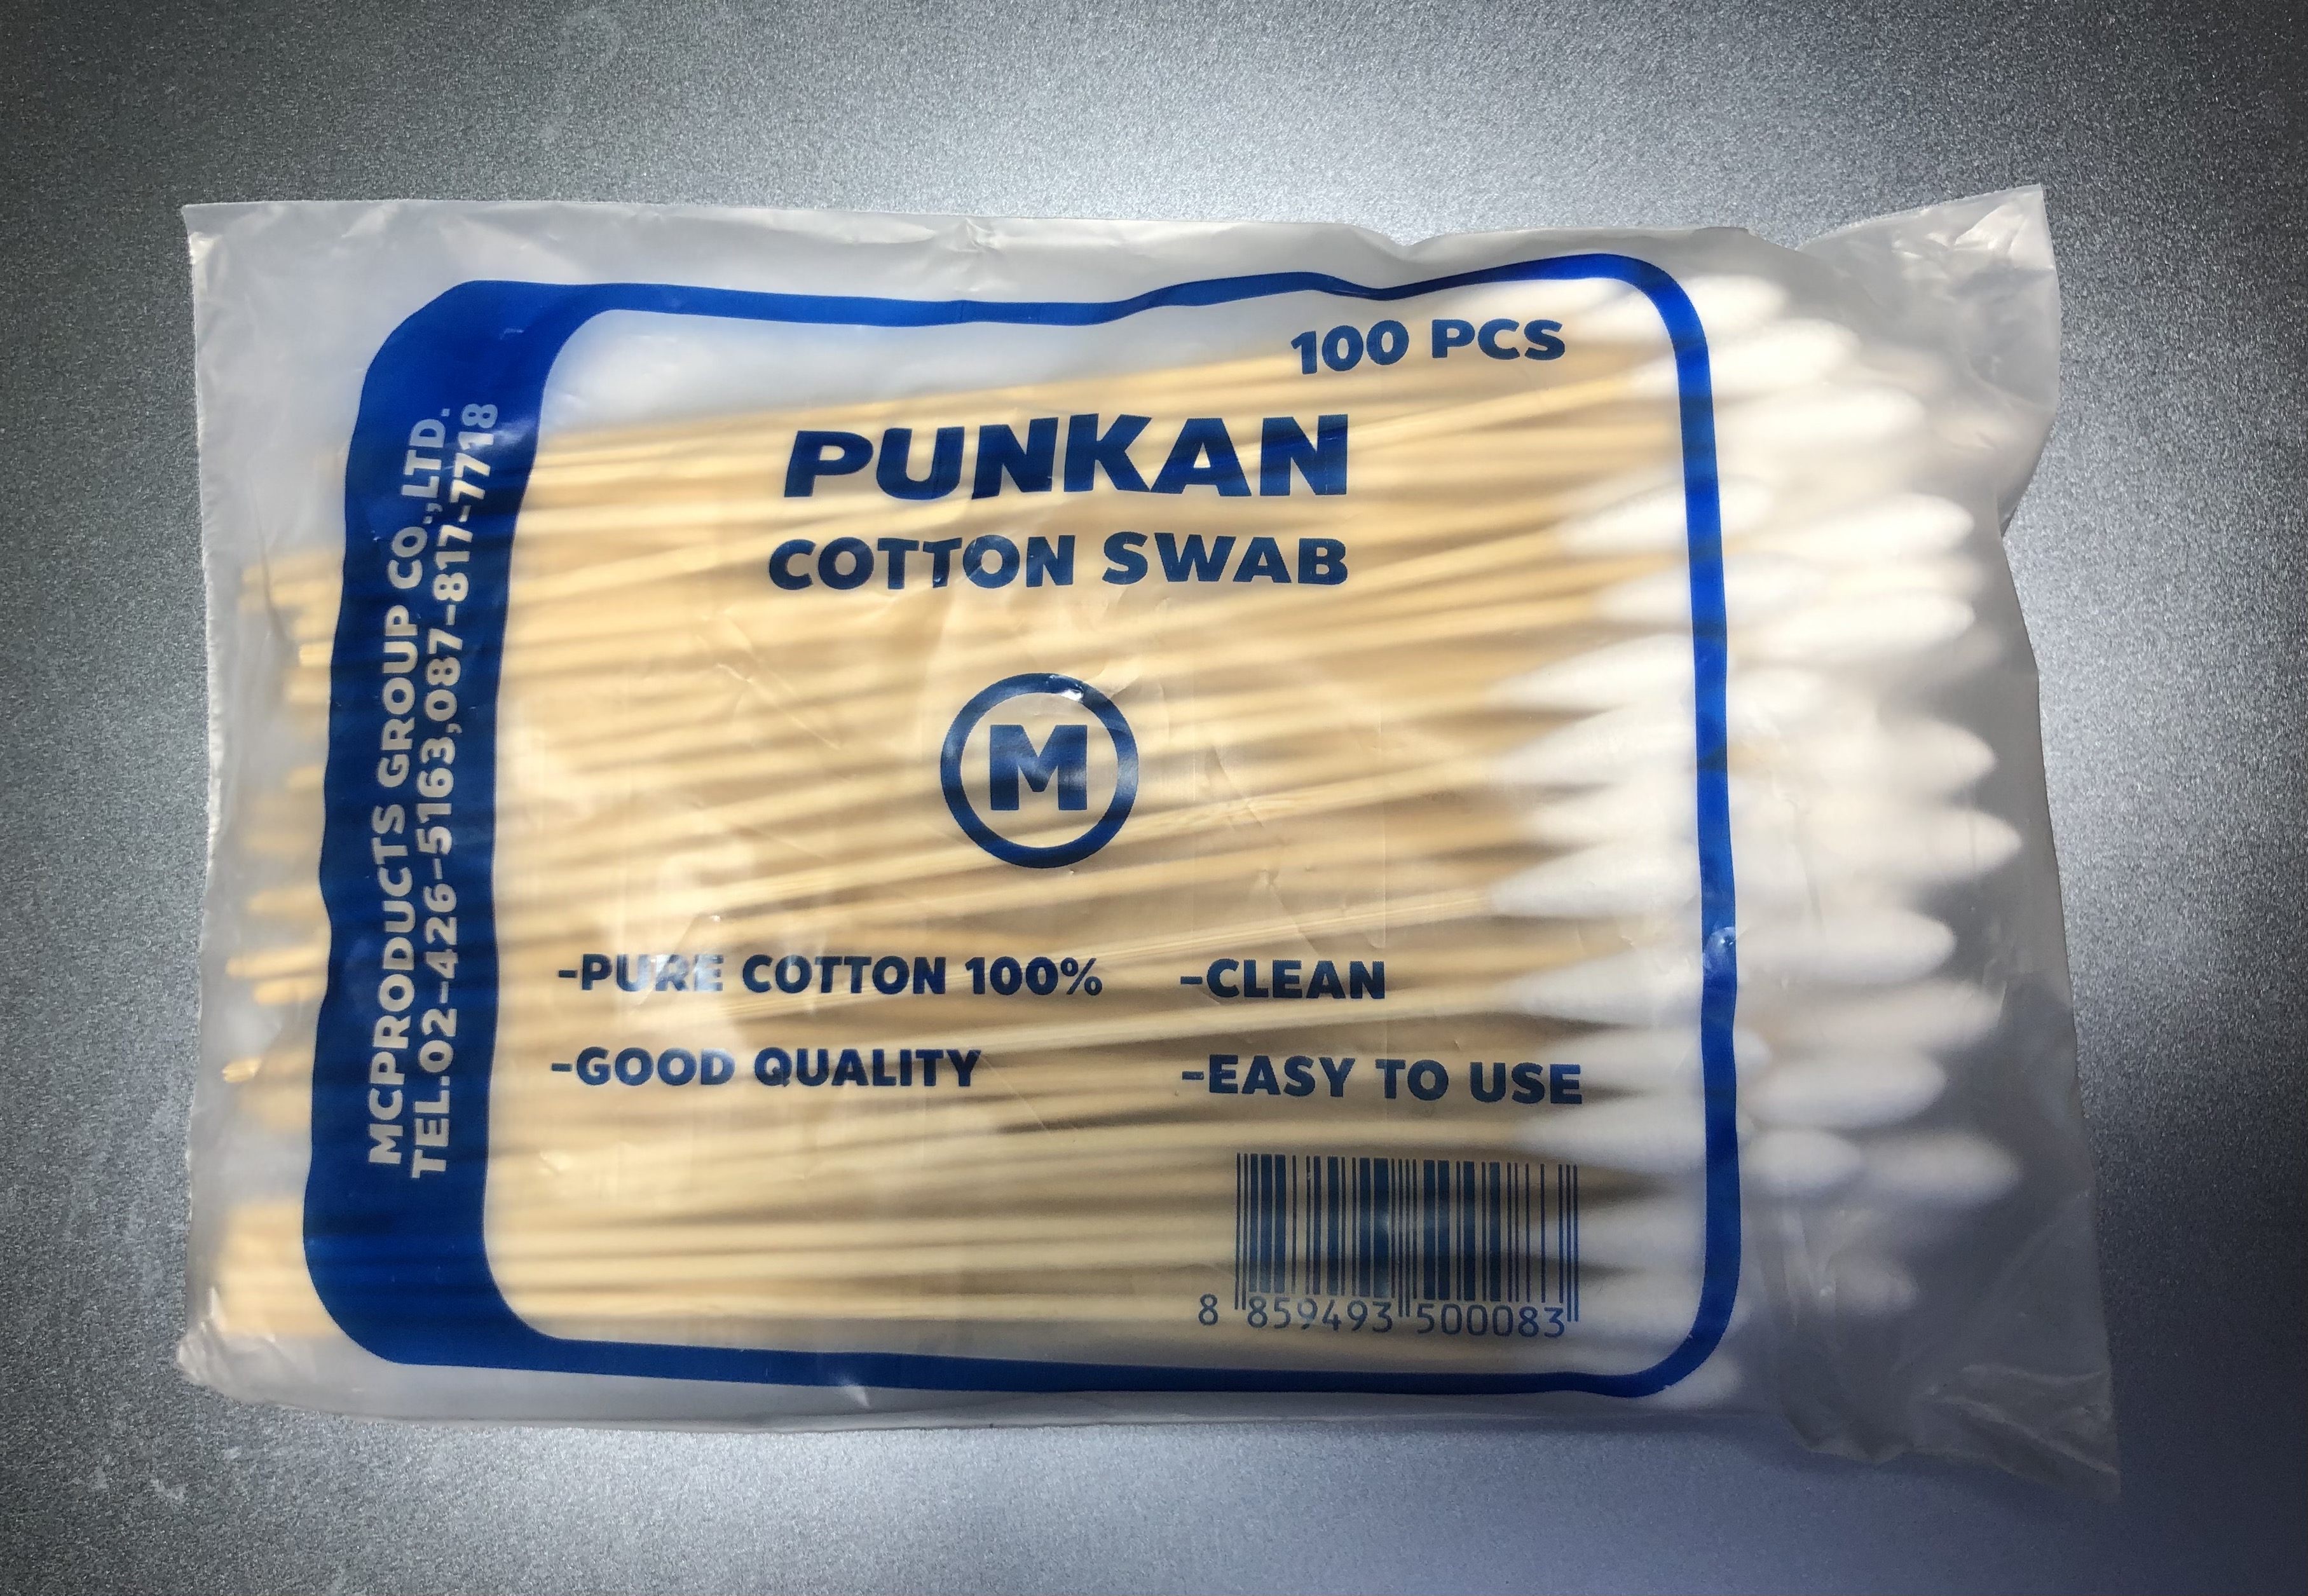 Cotton swab ไม้พันสำลี สำลีพันก้าน คัตเตอร์บัตด้ามยาว เช็ดแผล size M ยาว 6 นิ้ว 100 ก้าน